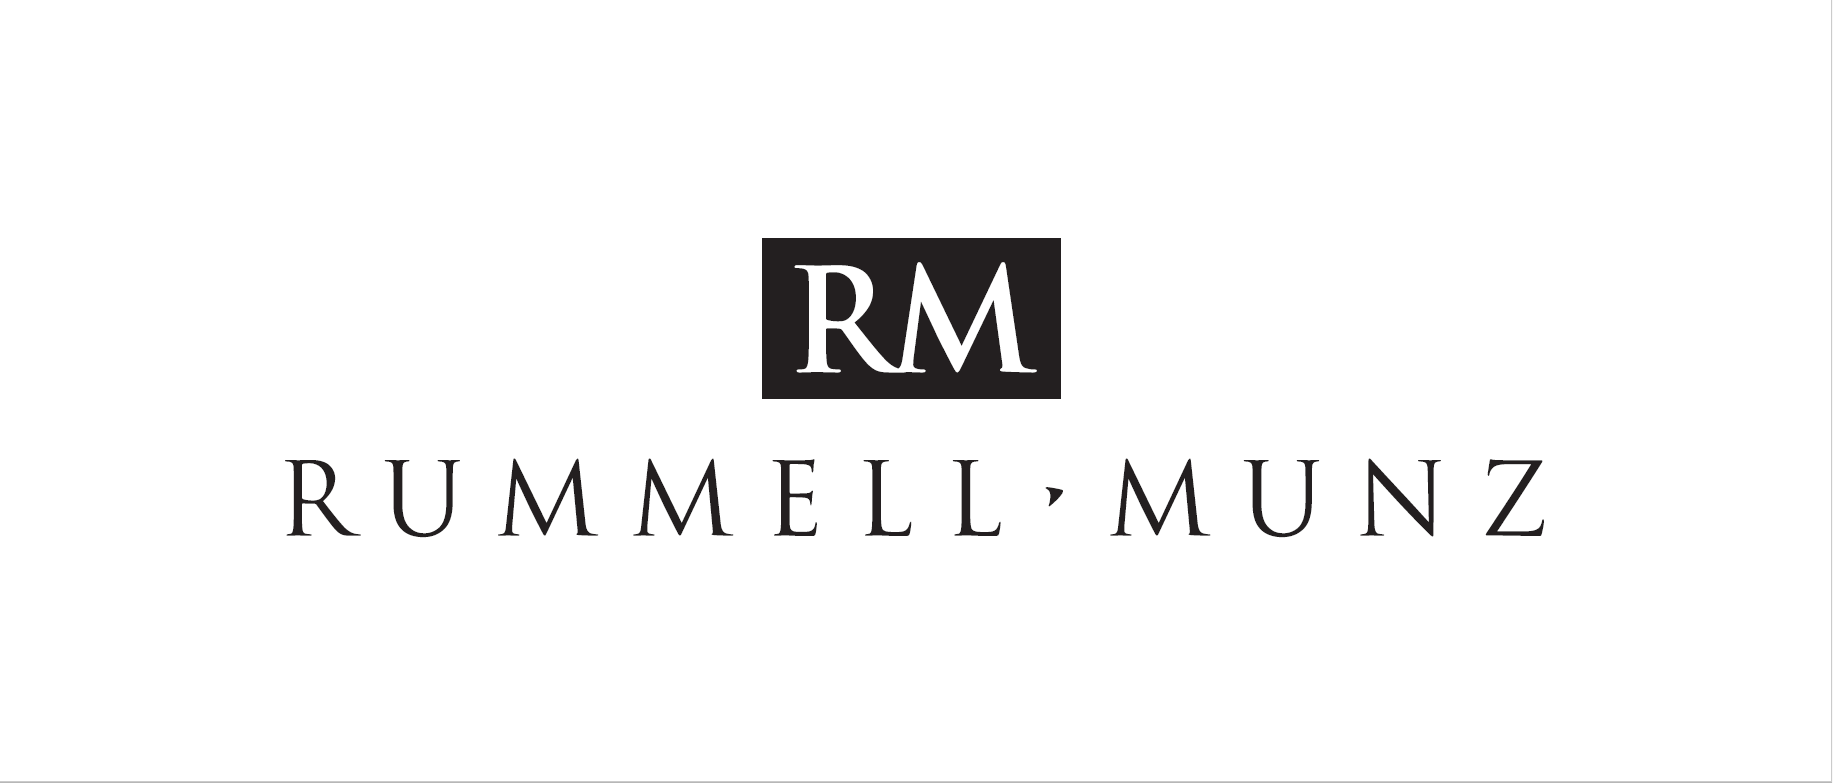 Rummell Munz logo